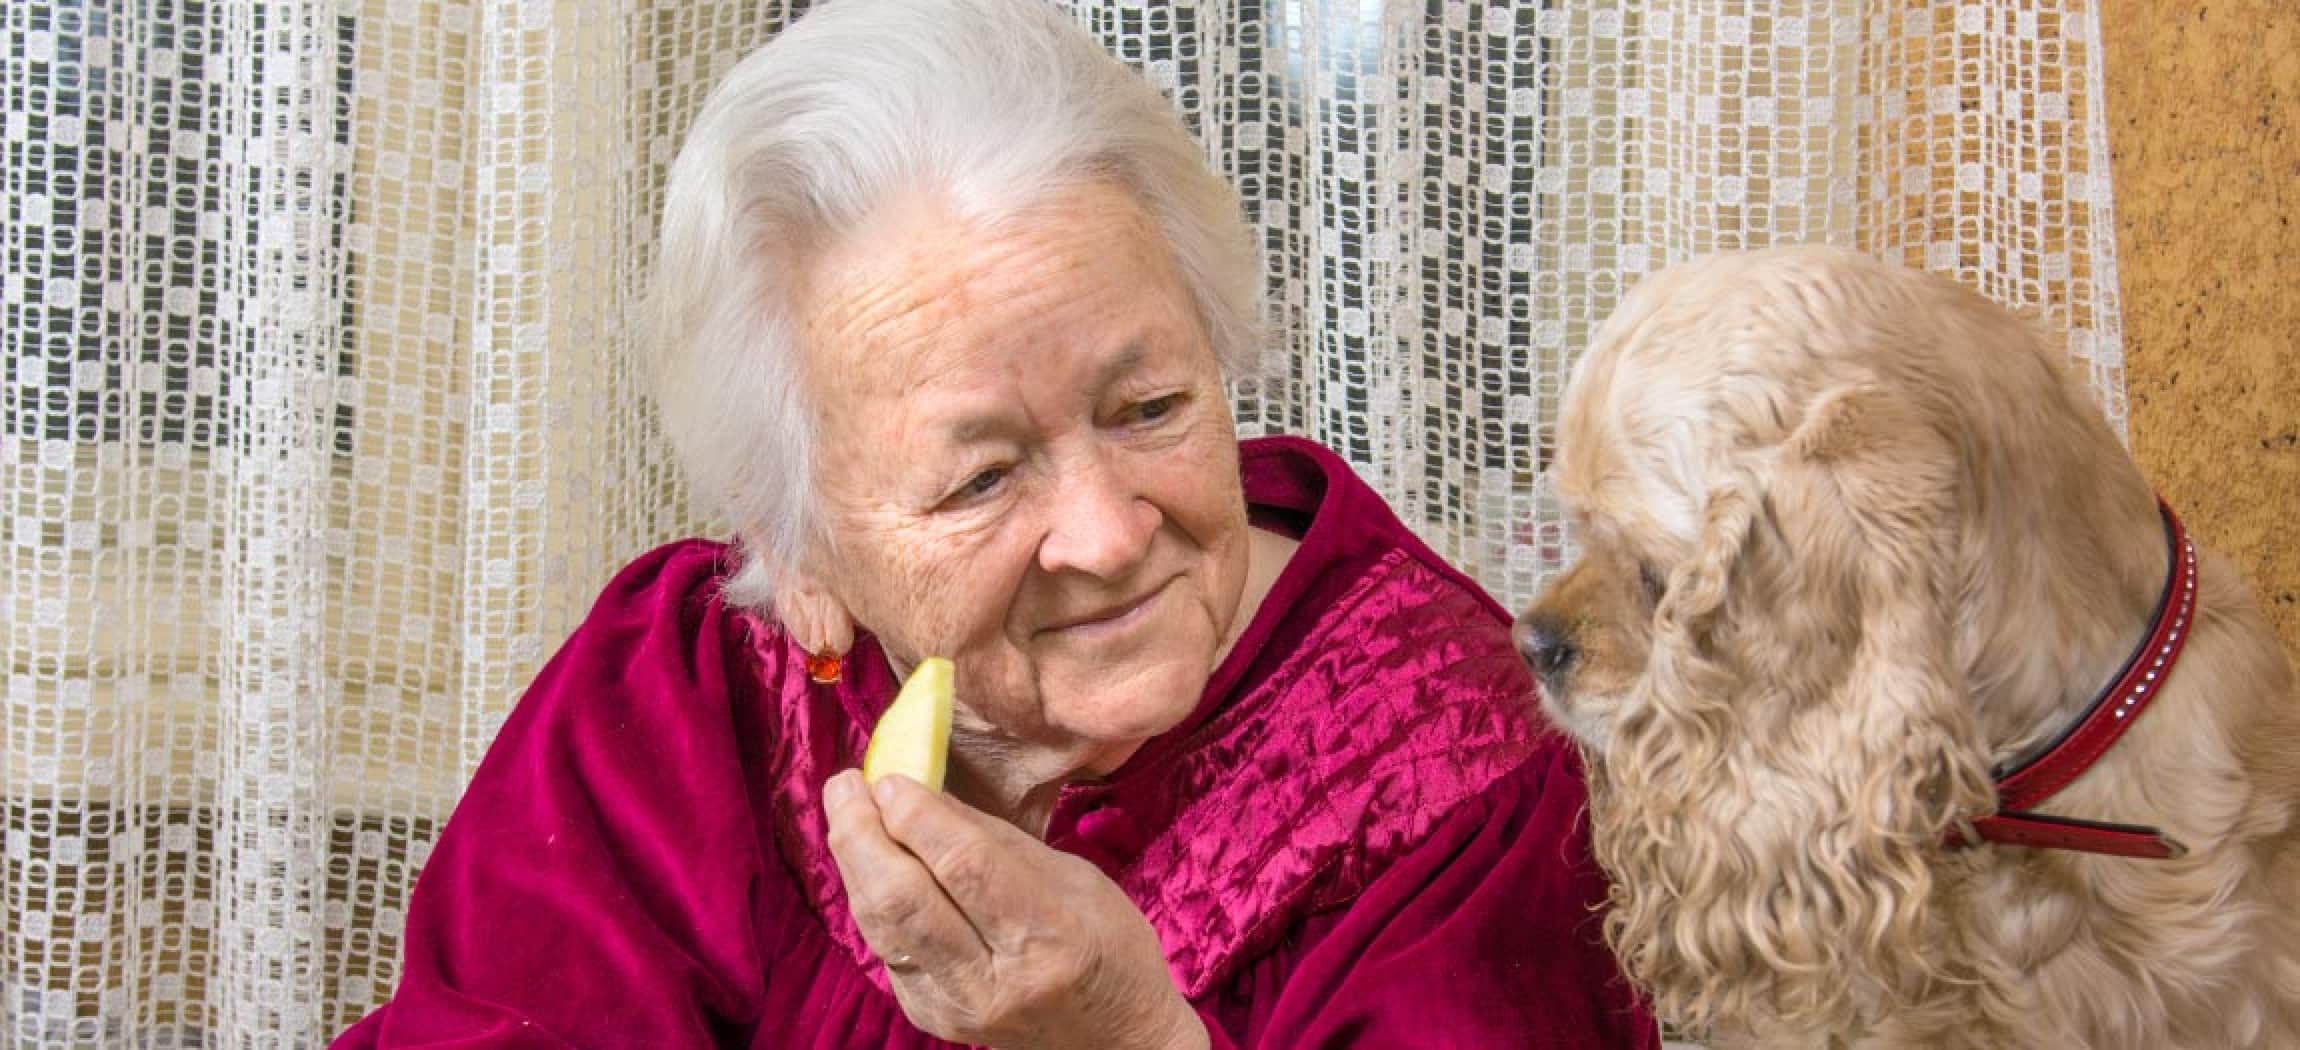 Oude vrouw met stukje appel en haar hondje kijkt ernaar